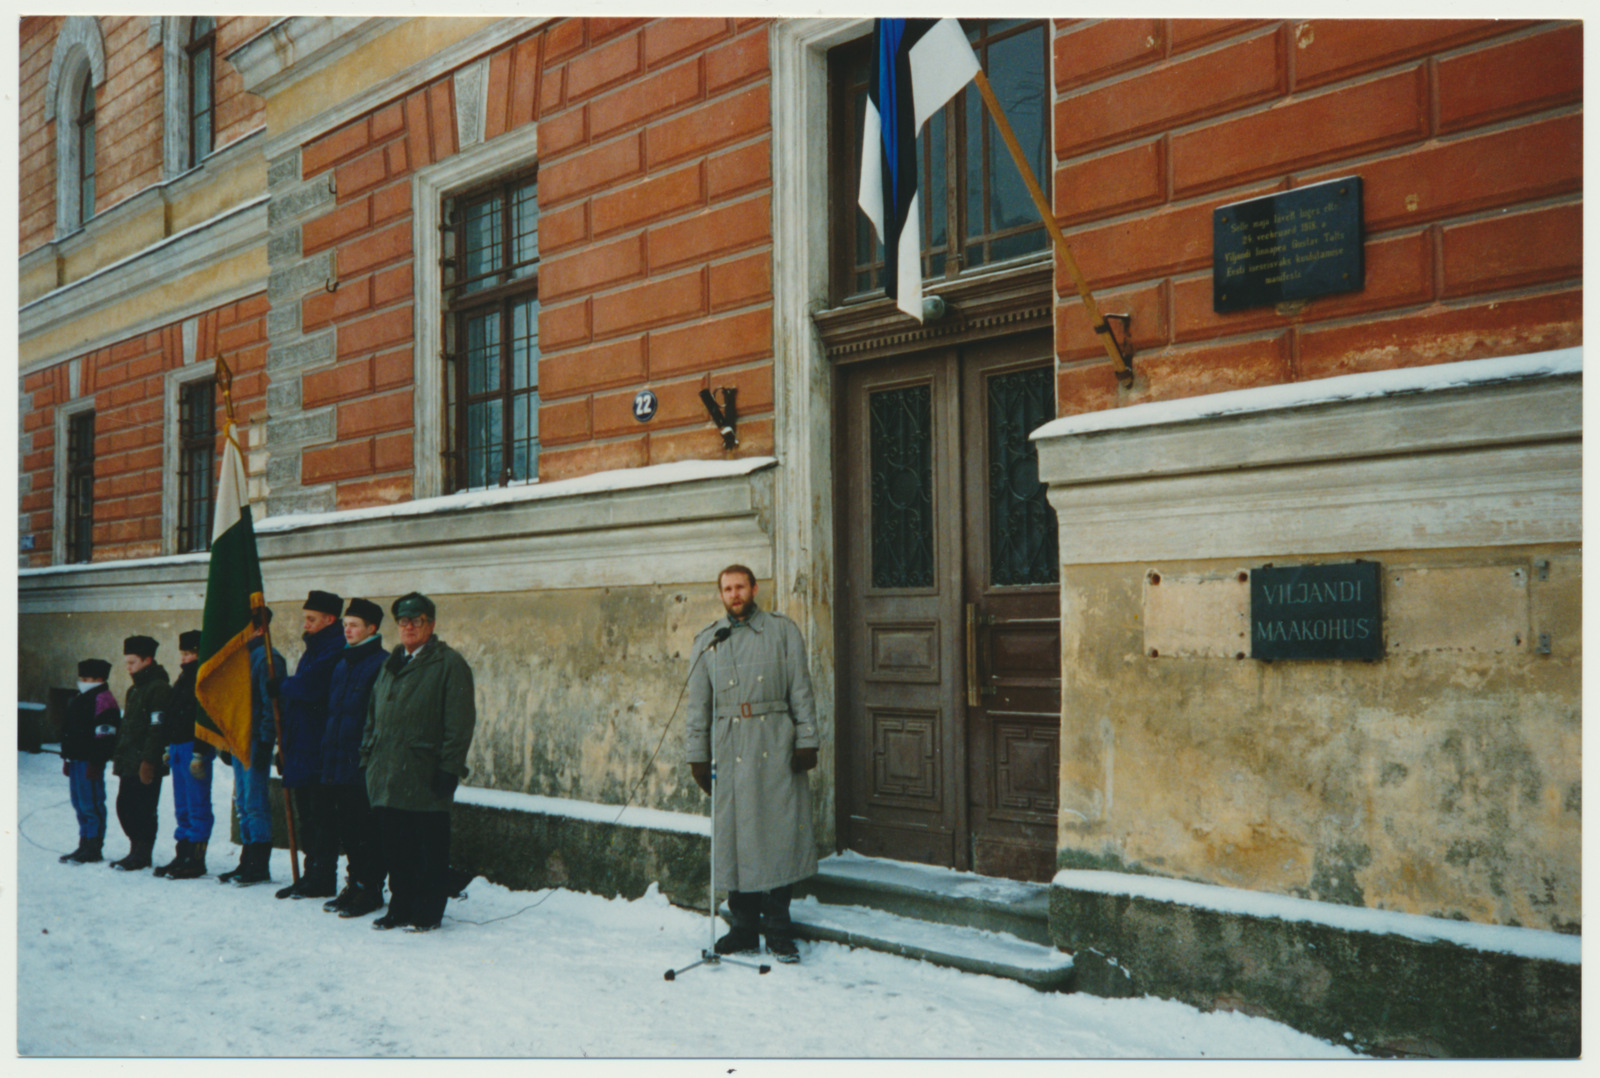 värvifoto, Viljandi, Eesti Vabariik 76, 24.02.1994